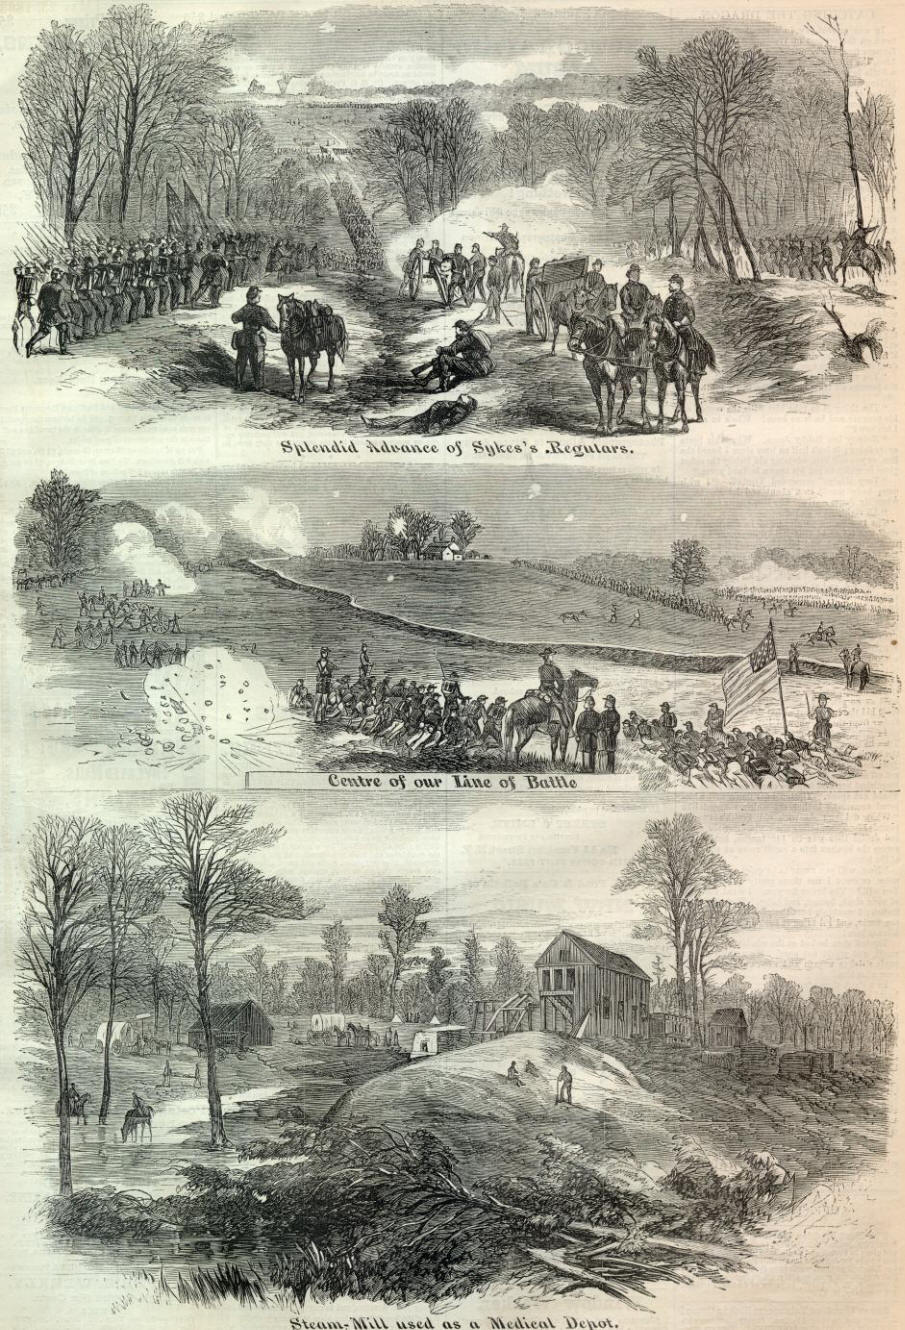 Battlefield at Chancellorsville